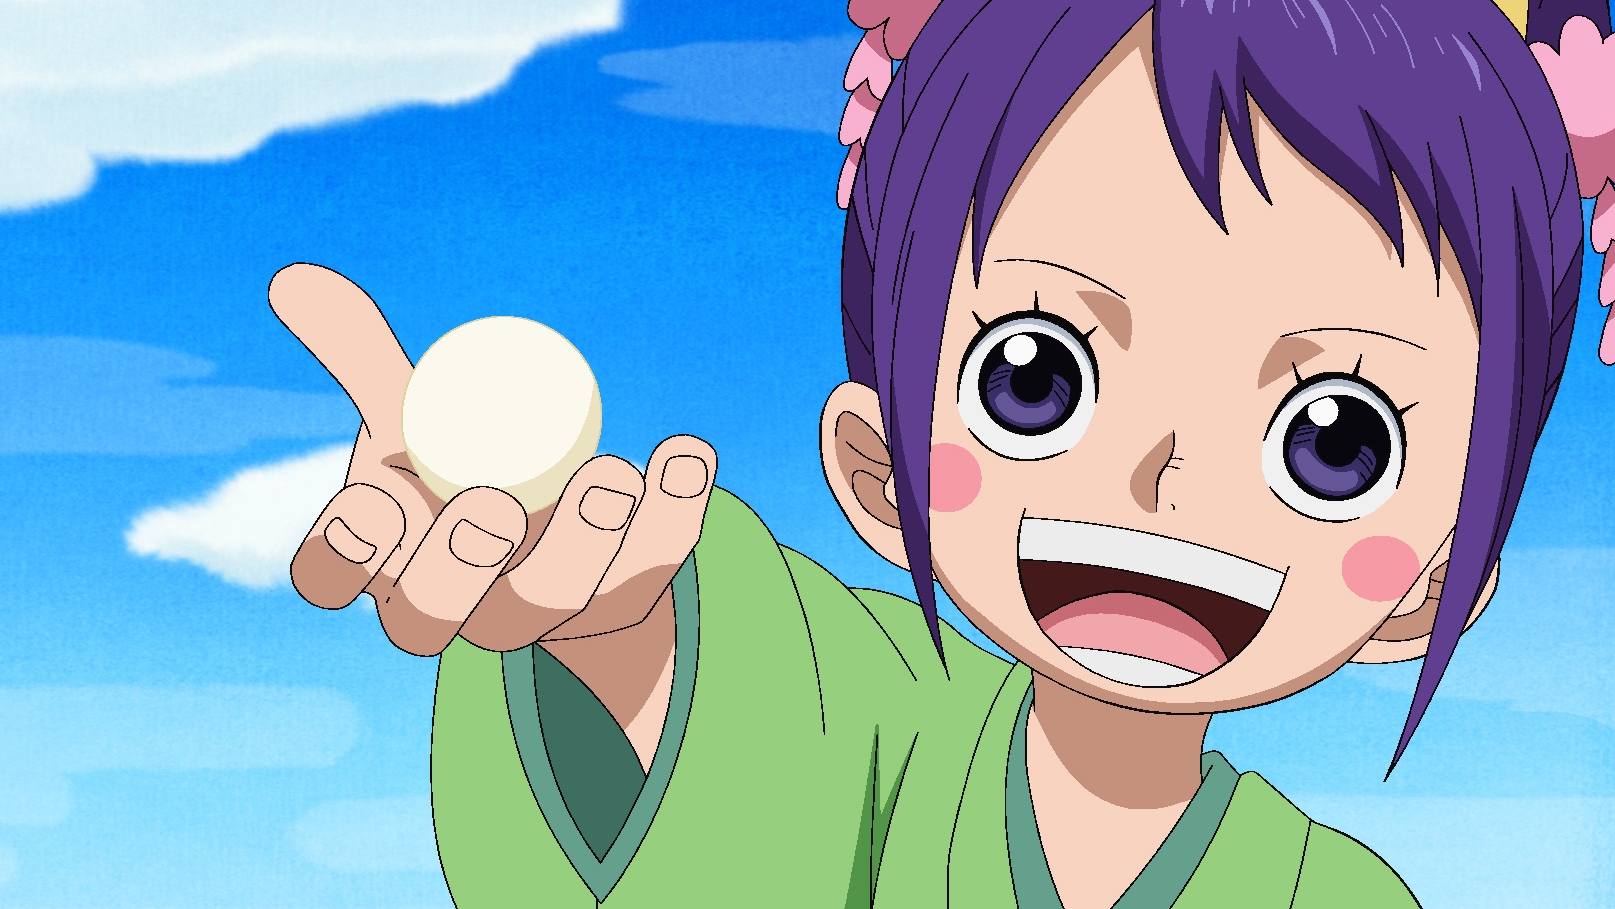 Watch One Piece Season 14 Episode 3 Sub Dub Anime Simulcast Funimation